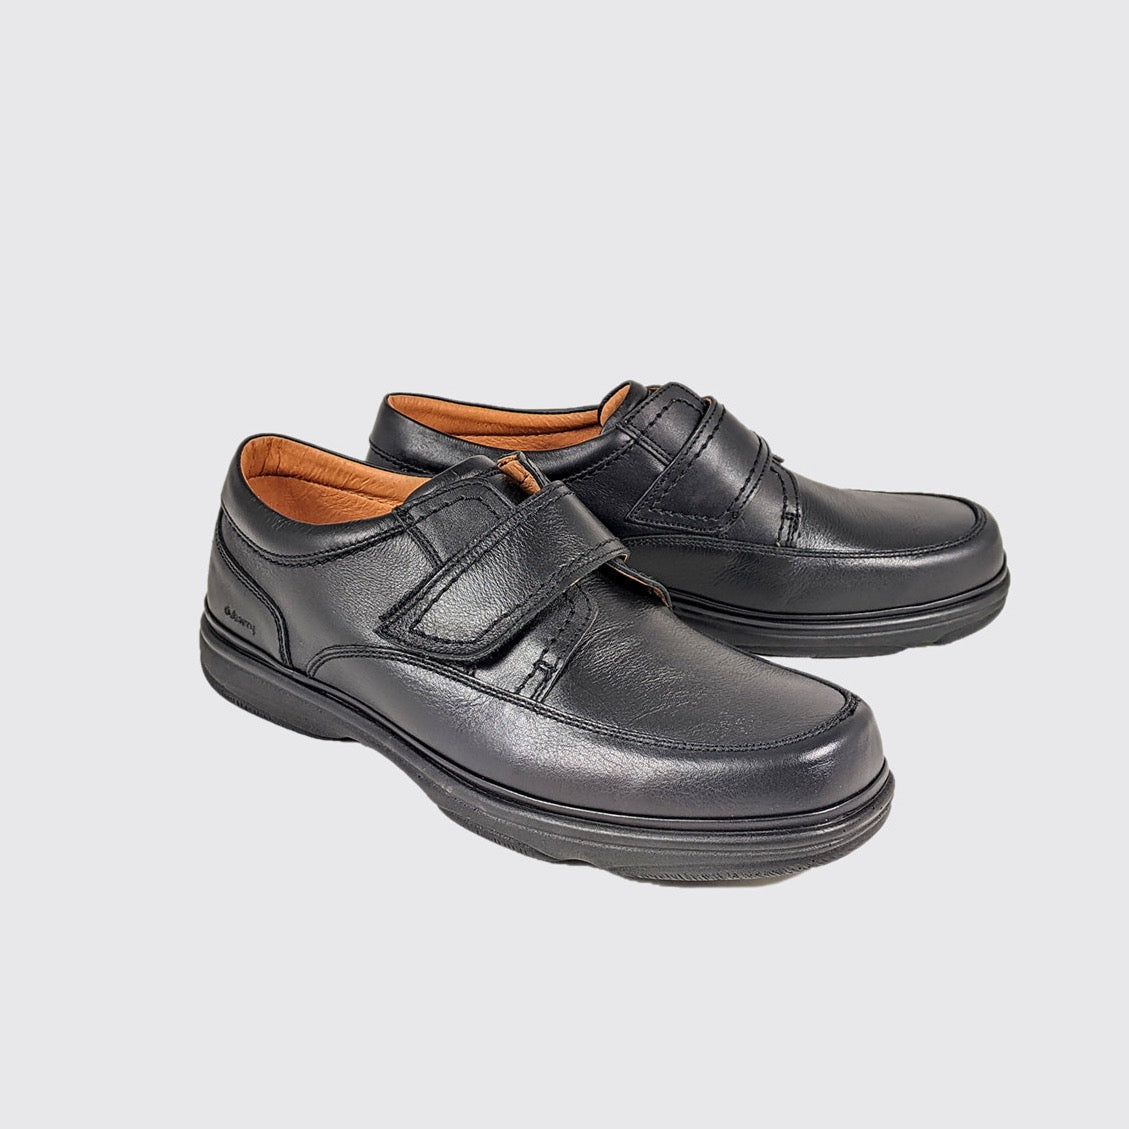 Dubarry Braston black leather velcro wide - Kirbys Footwear Ltd